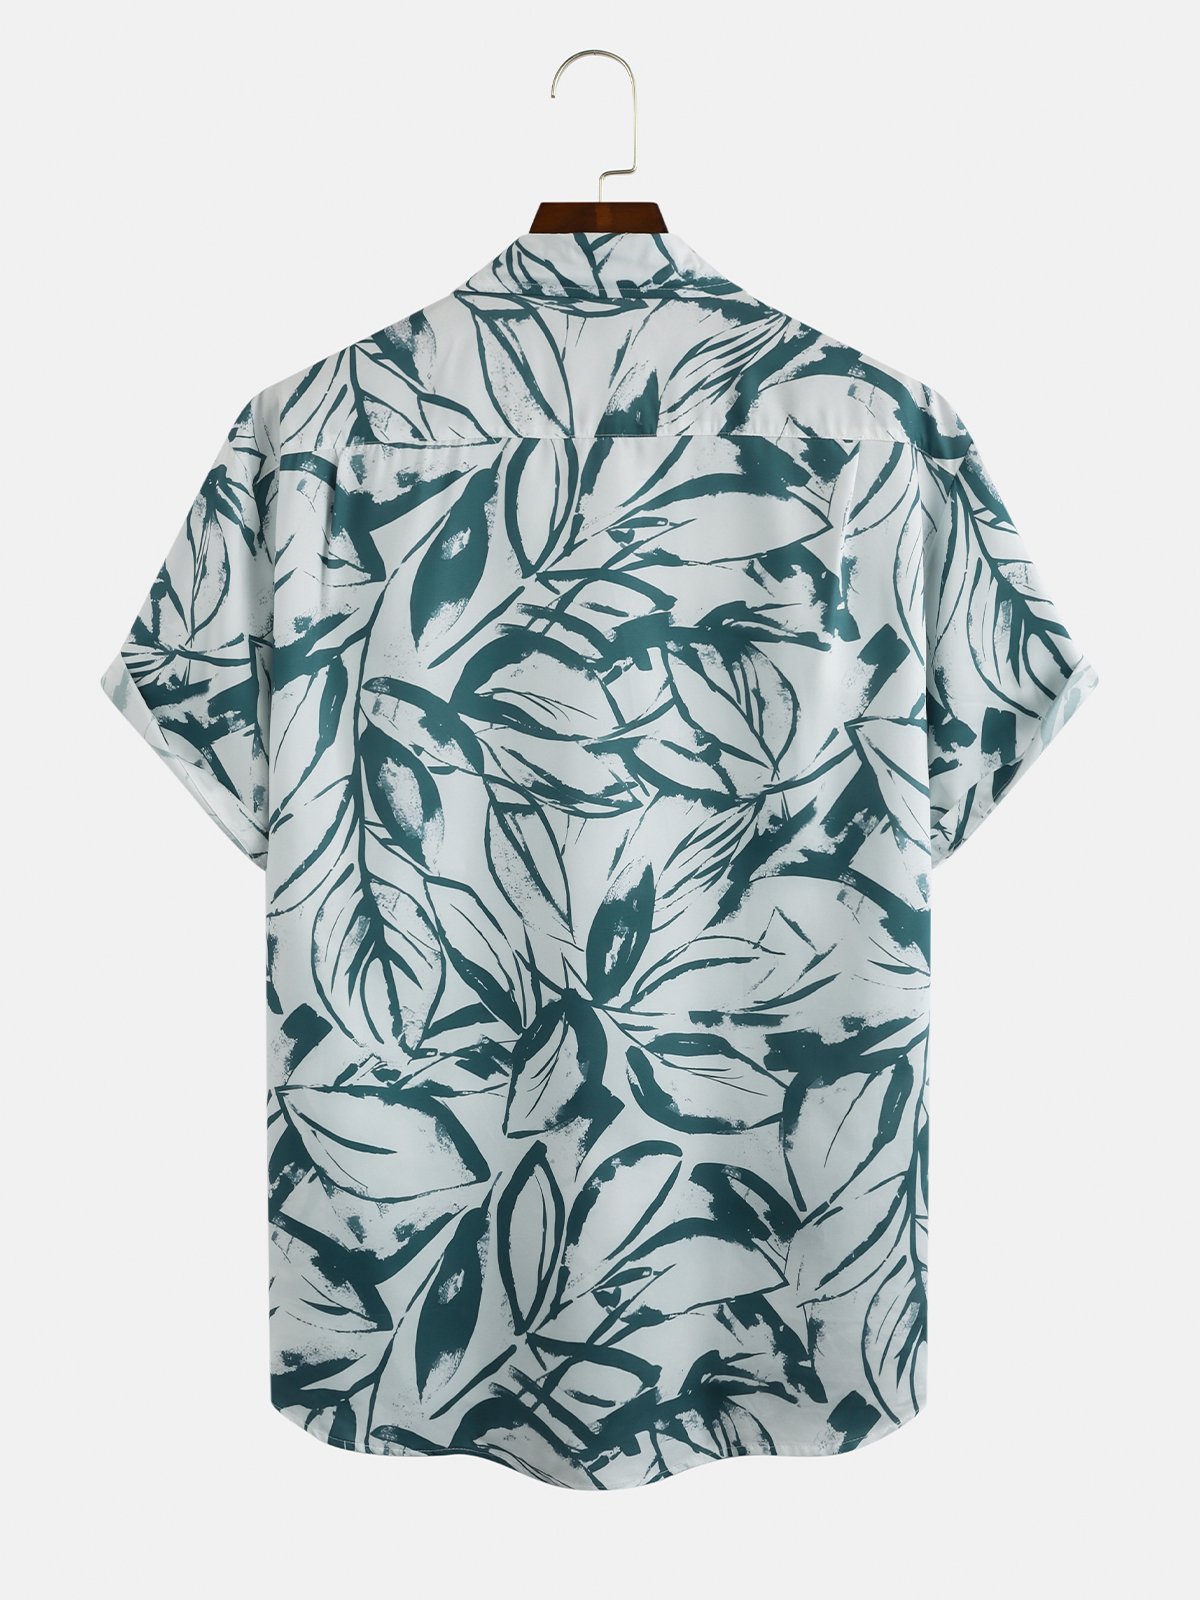 Herren Blätter Print Feuchtigkeit Wicking Stoff Fashion Hawaiische Revers Tasche Kurzarm Bluse